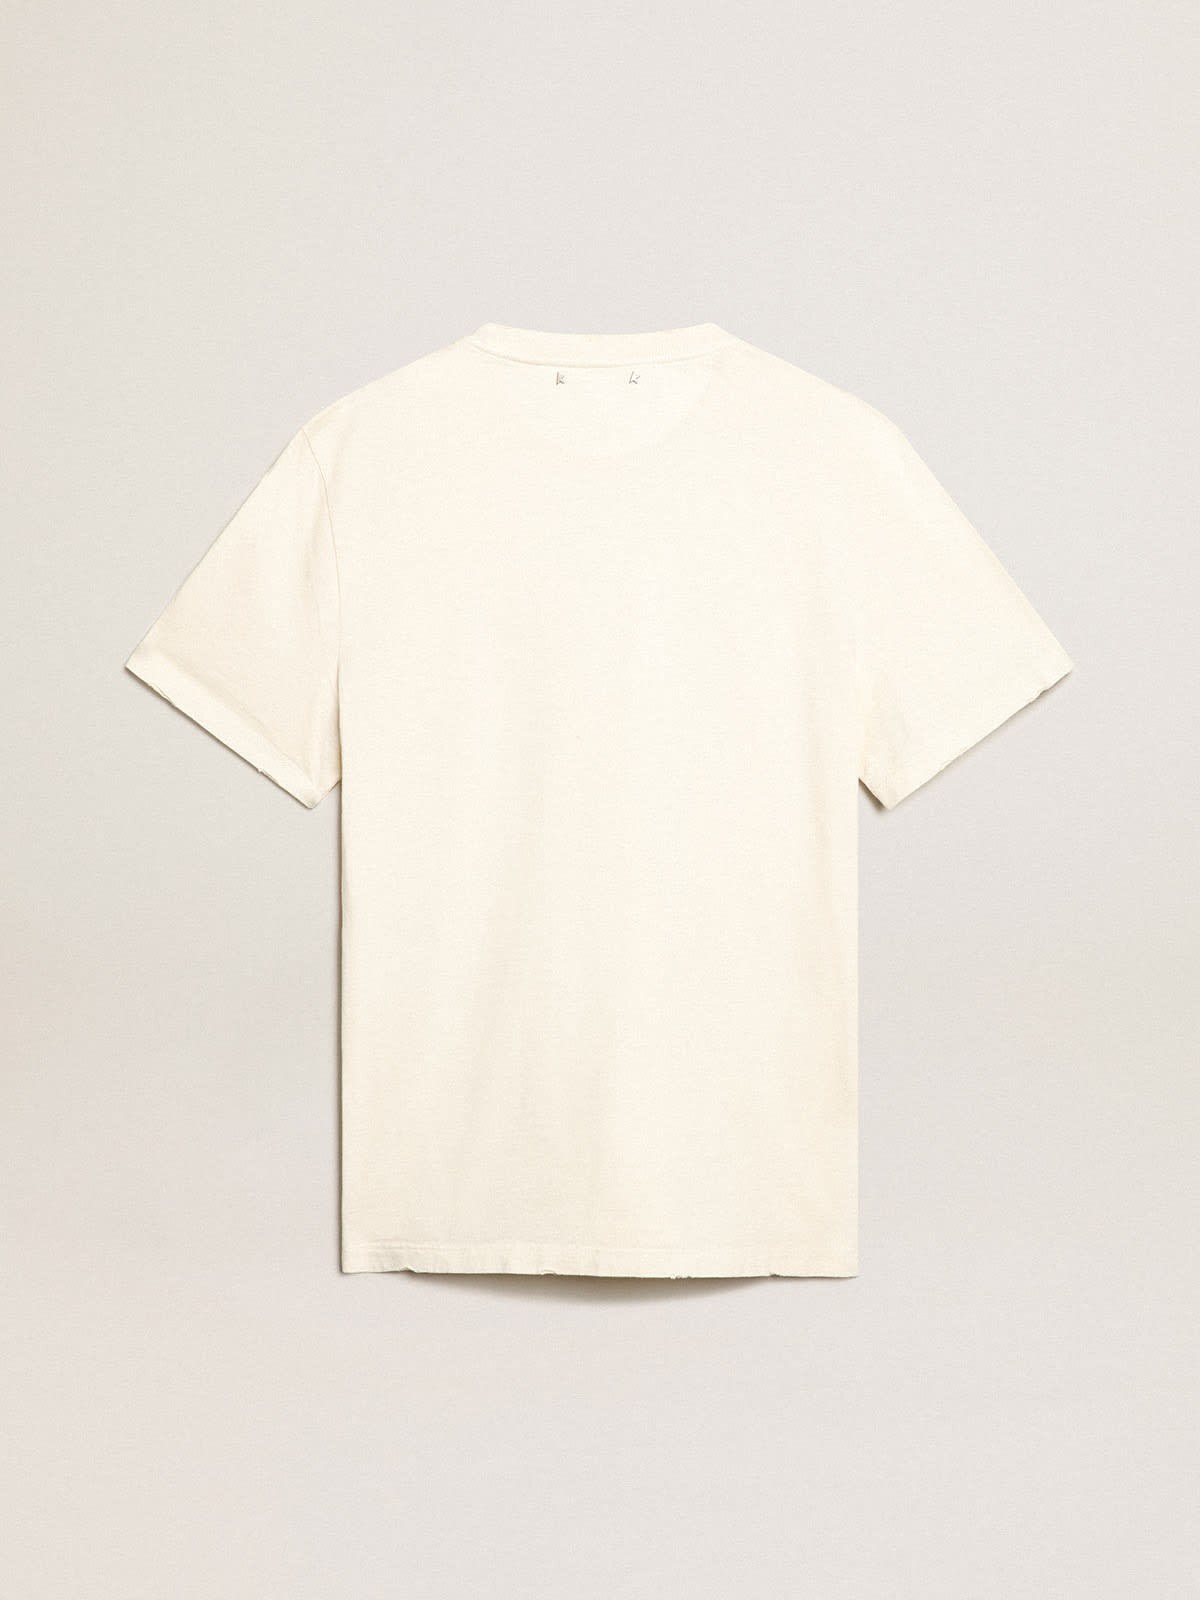 Golden Goose - Weißes T-Shirt mit Distressed-Finish und Aufschrift in 